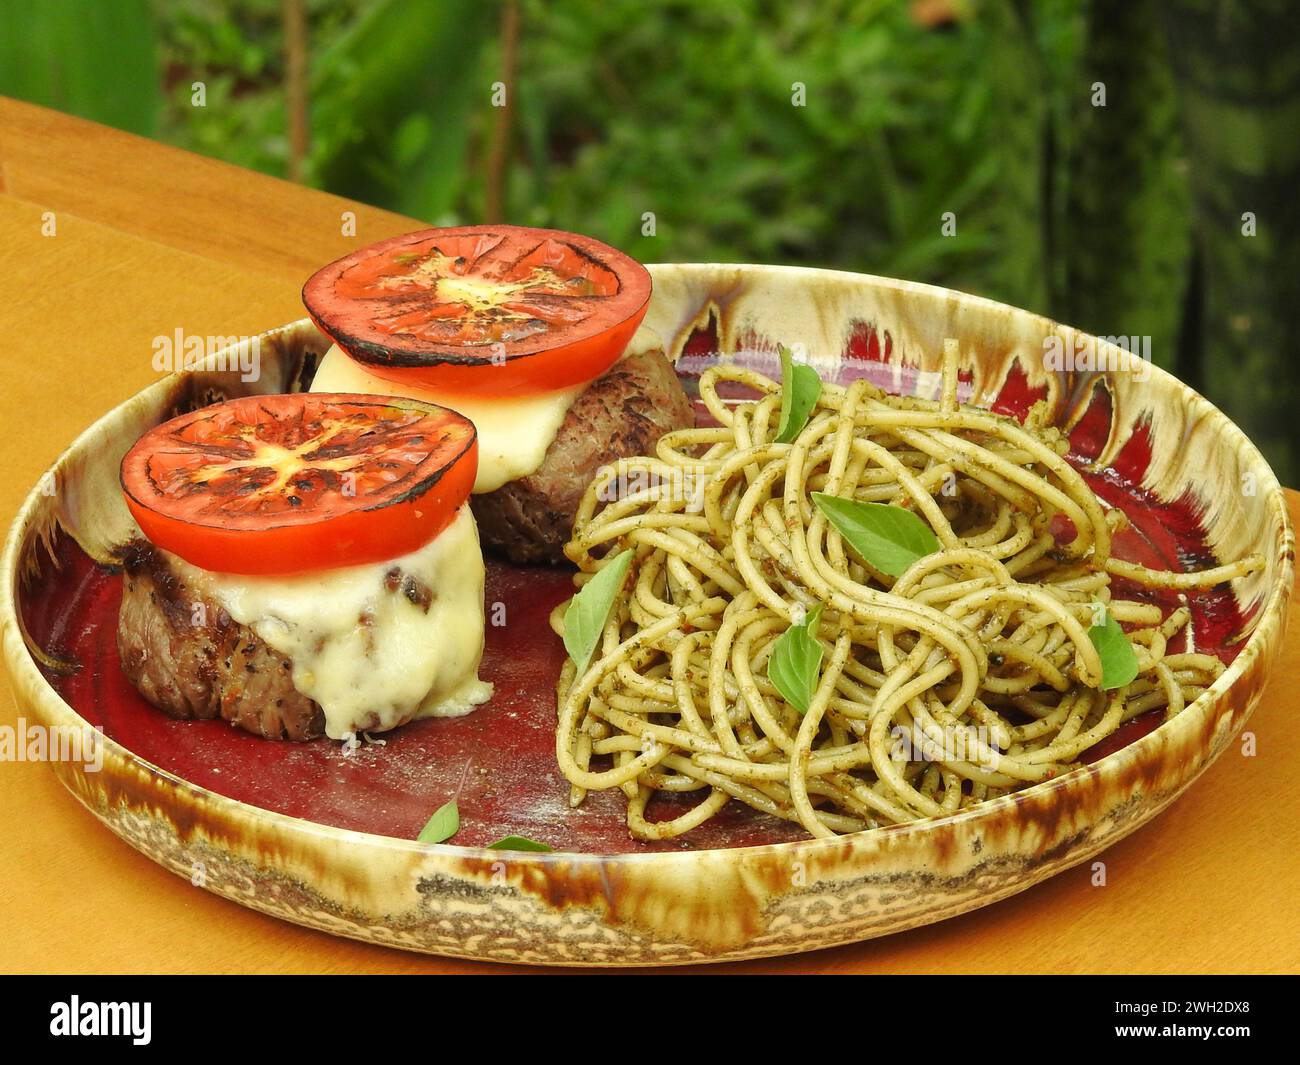 Delizioso filetto mignon abbinato all'insalata caprese e servito con spaghetti conditi con saporita salsa al pesto Foto Stock